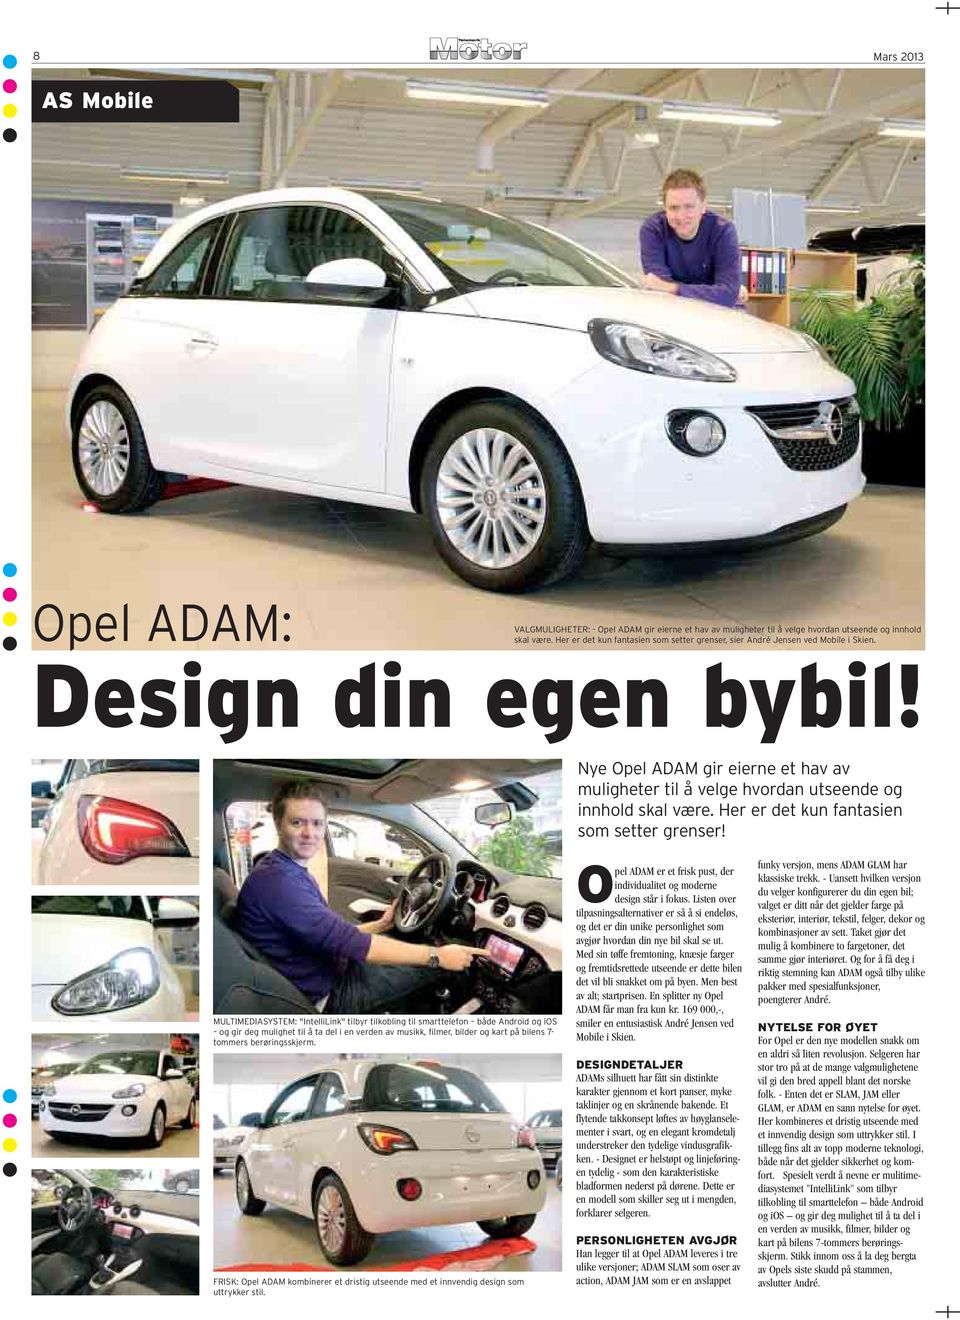 Nye Opel ADAM gir eierne et hav av muligheter til å velge hvordan utseende og innhold skal være. Her er det kun fantasien som setter grenser!